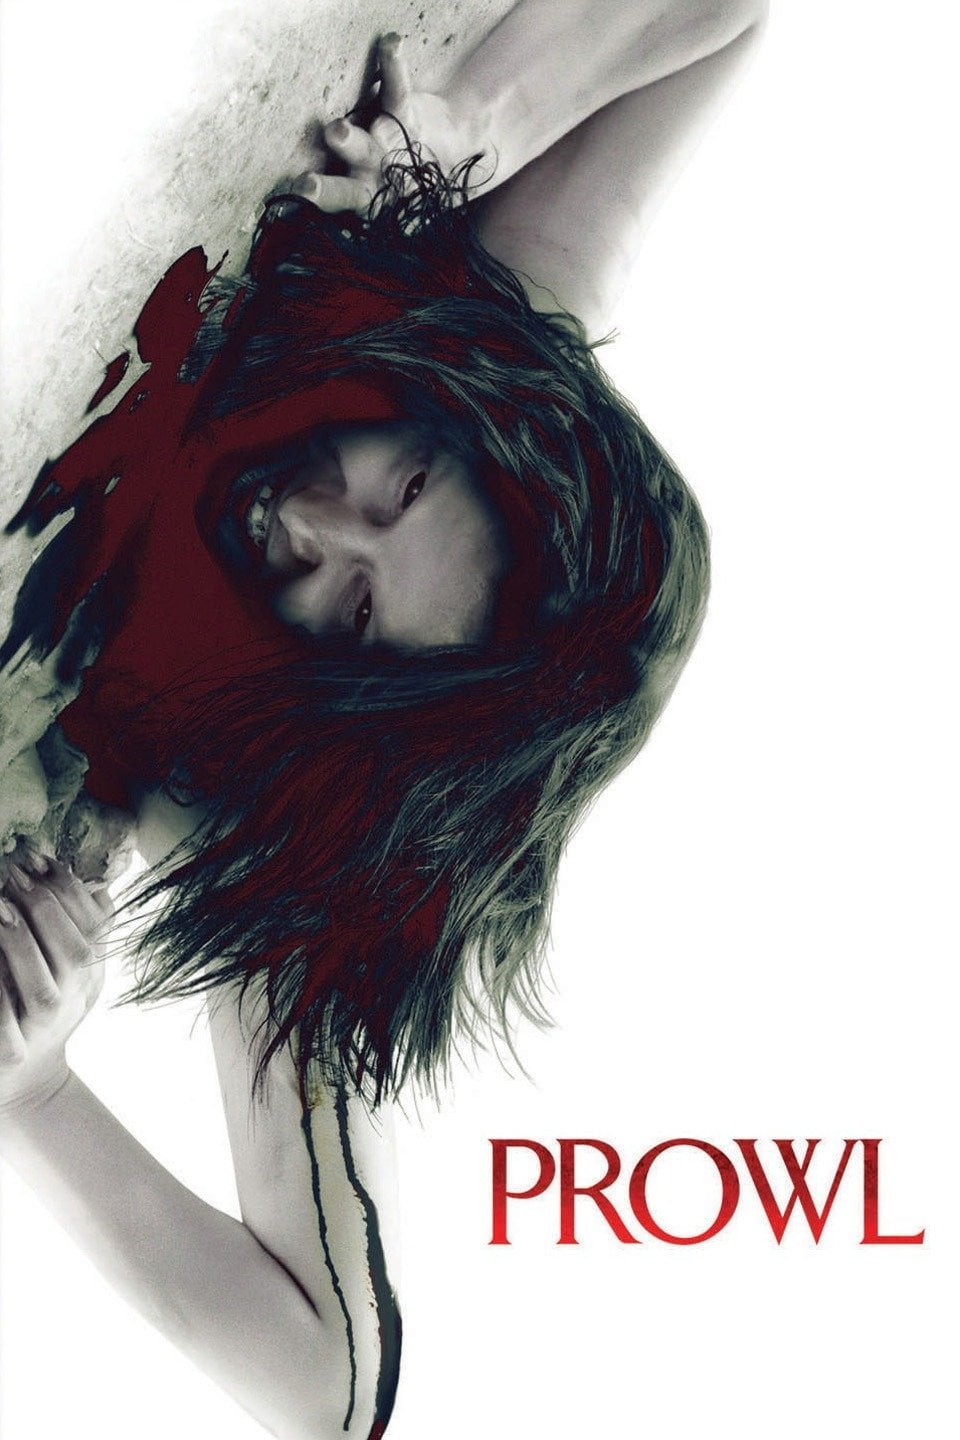 Prowl [Sub-ITA] (2010)